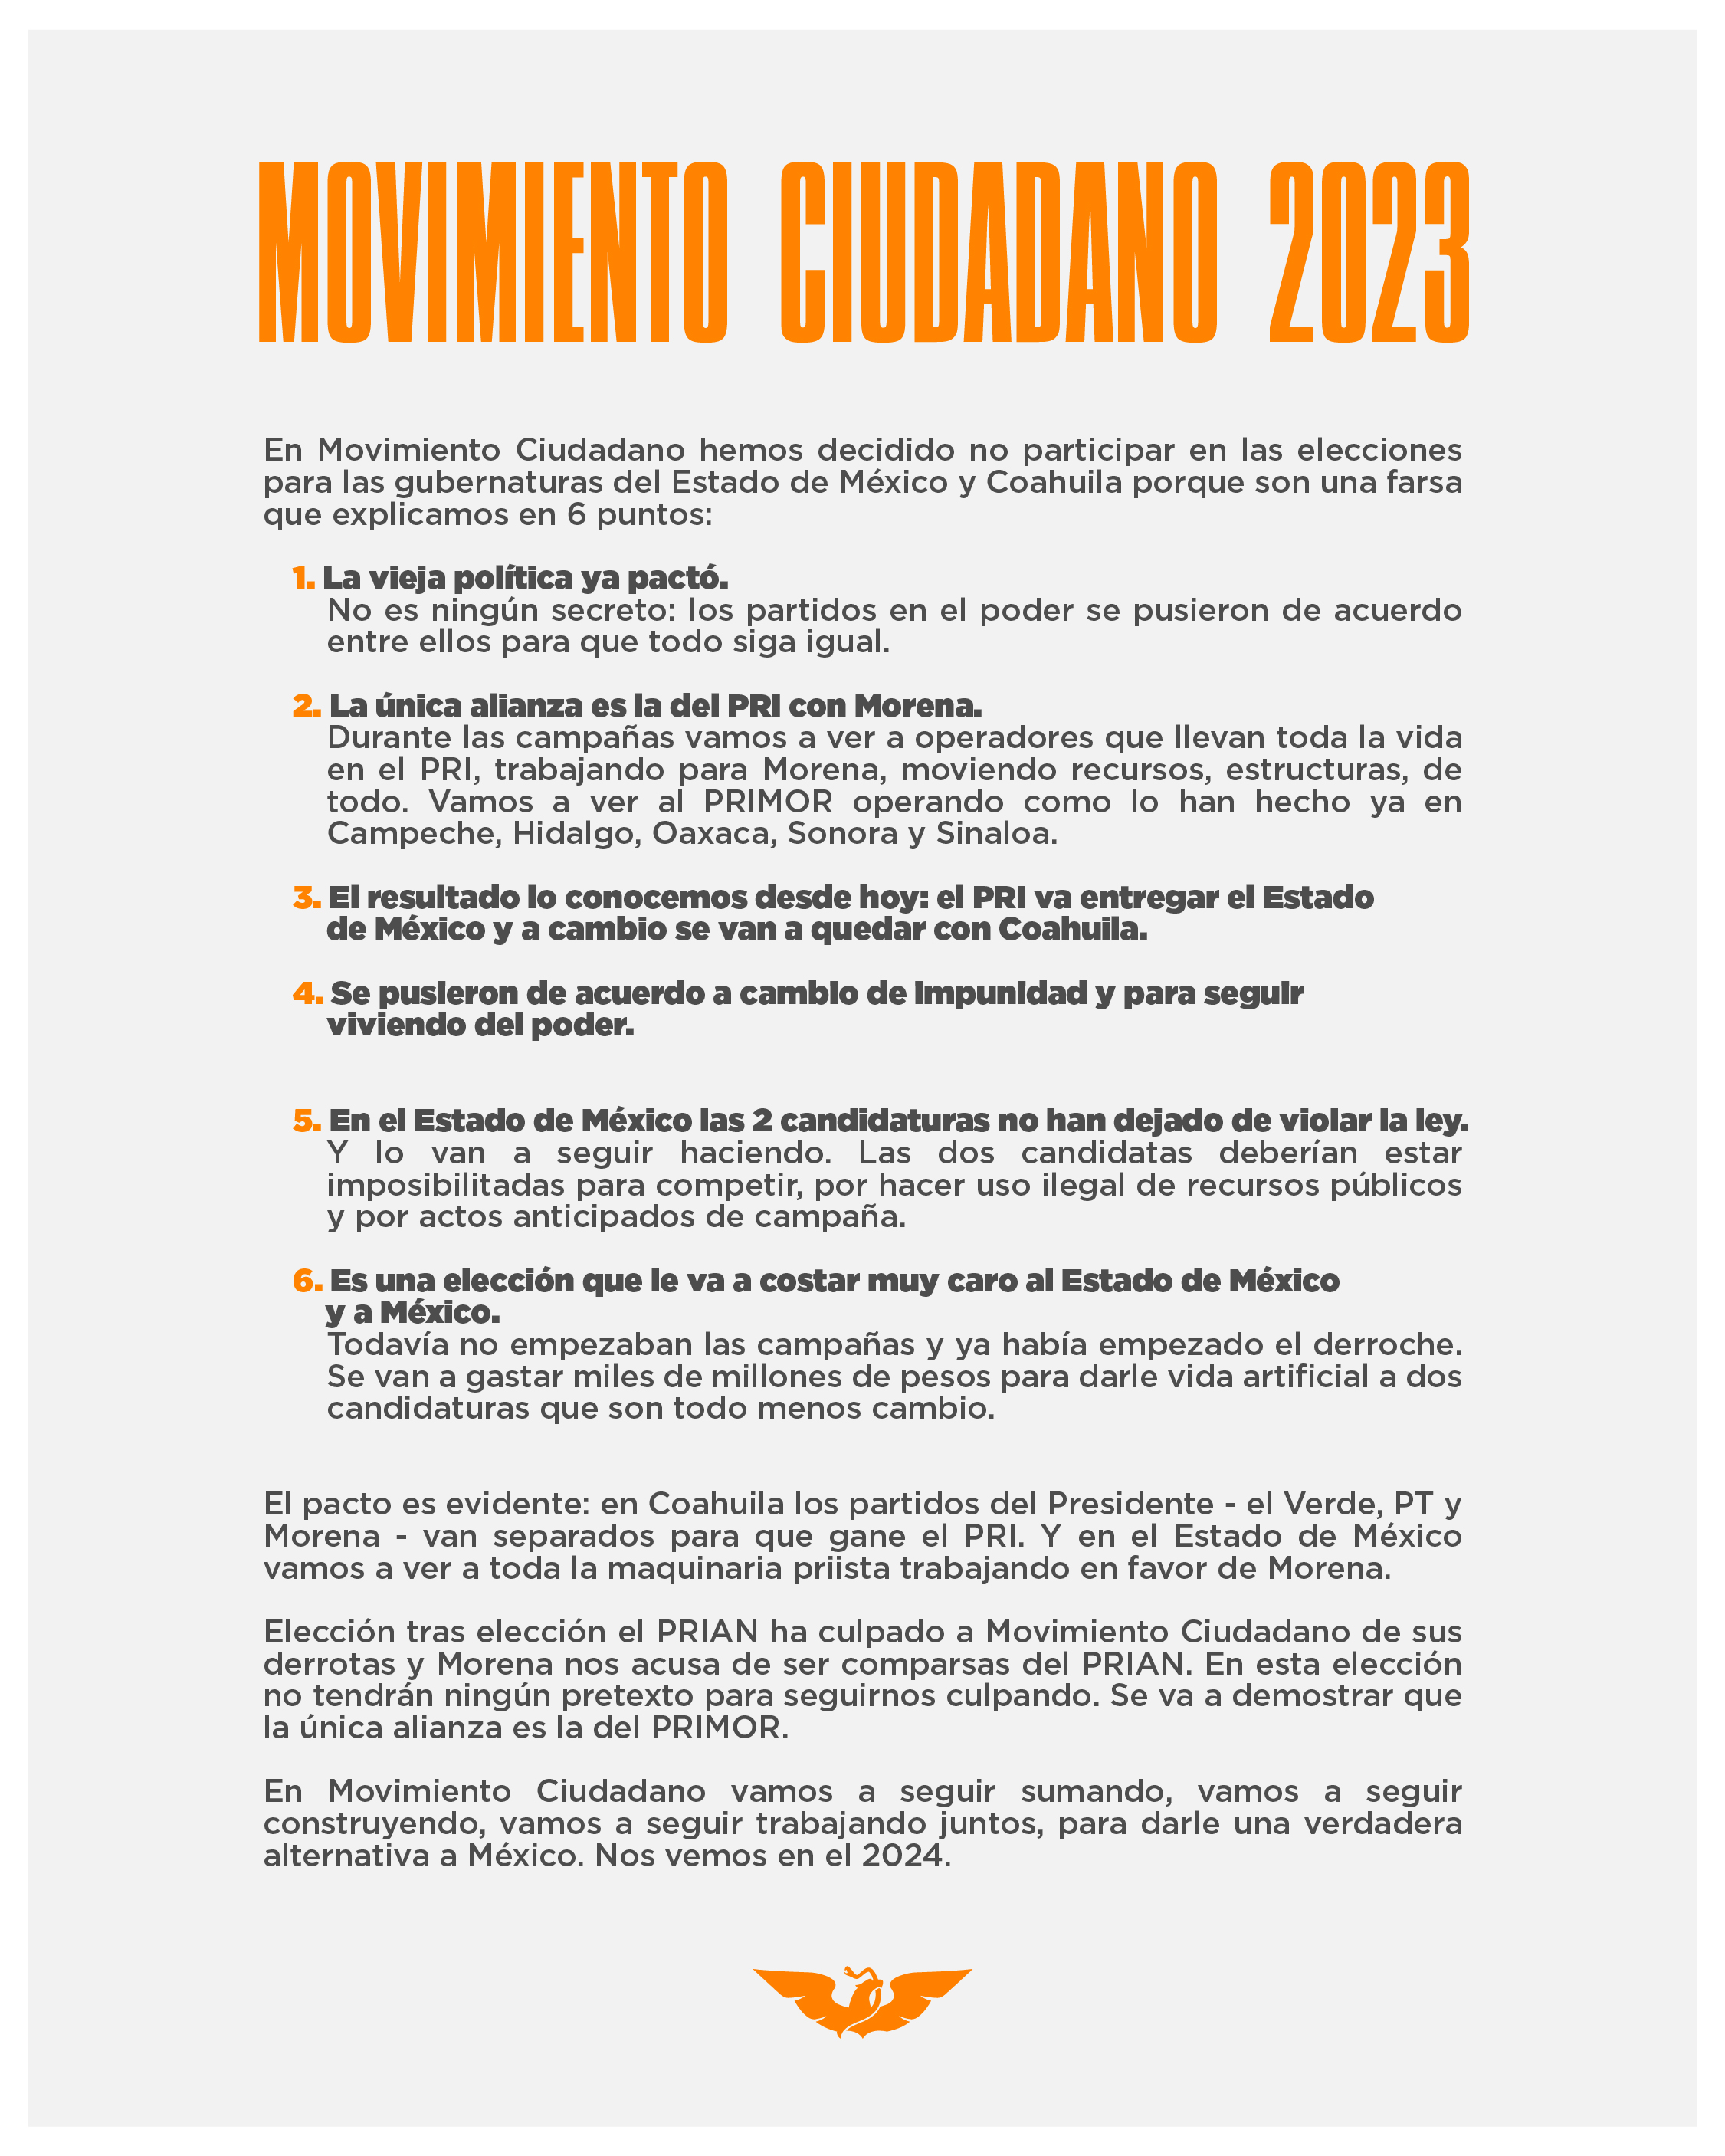 La bancada confirmó que no participará en las elecciones gubernamentales de Edomex y Coahuila 2023 (Movimiento Ciudadano)